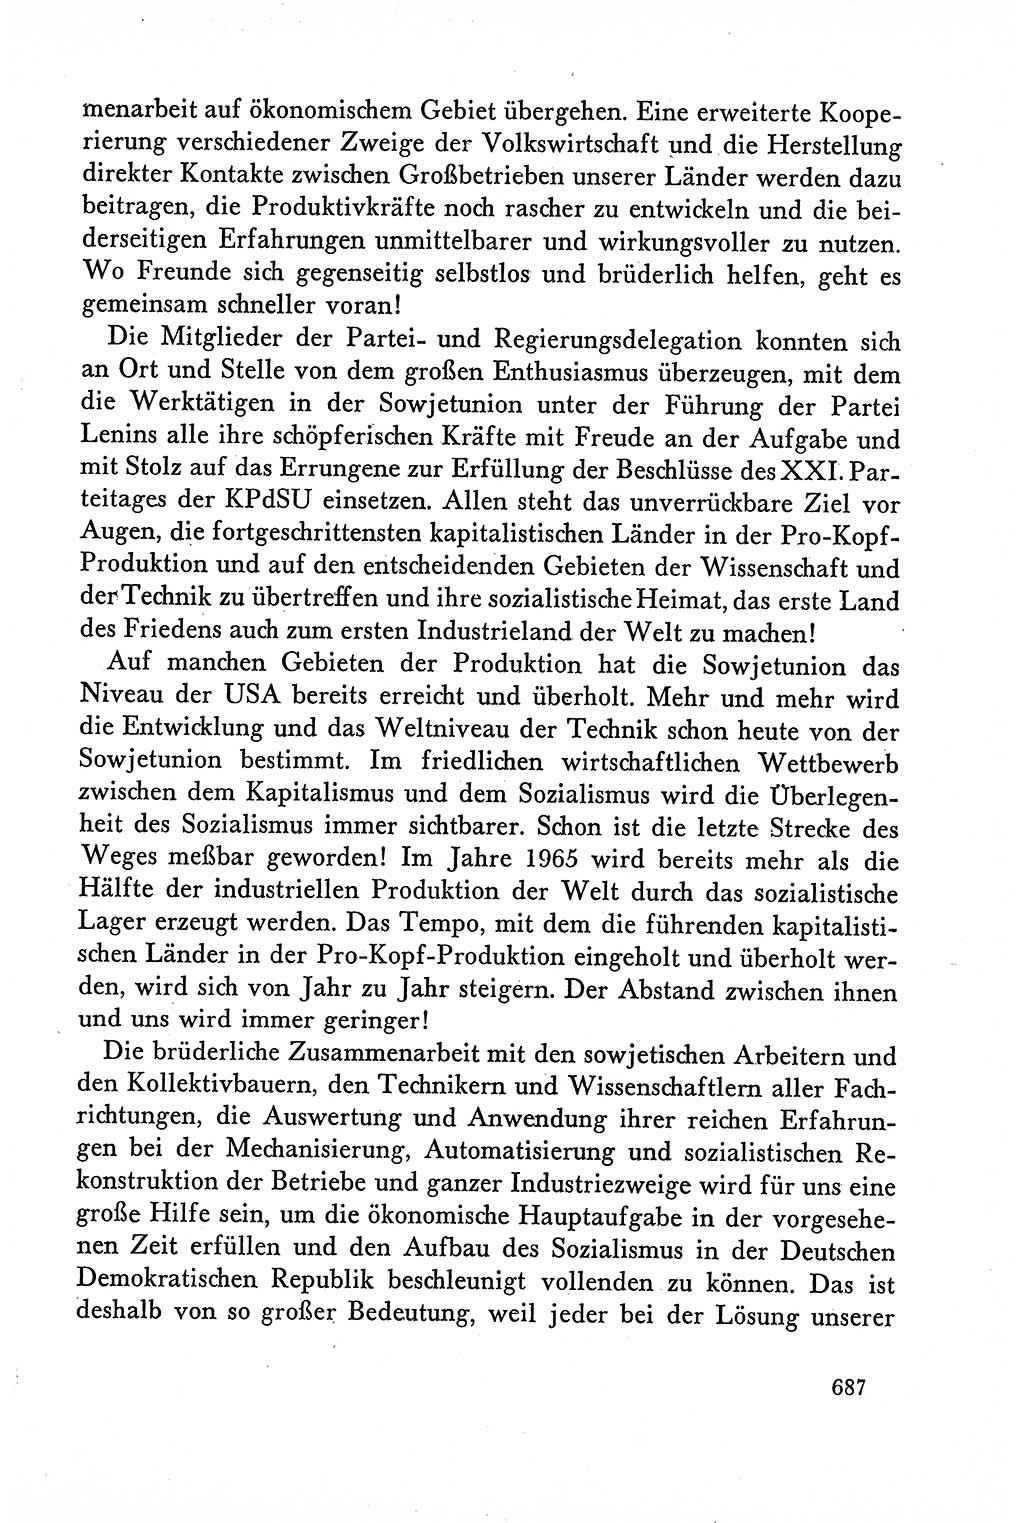 Dokumente der Sozialistischen Einheitspartei Deutschlands (SED) [Deutsche Demokratische Republik (DDR)] 1958-1959, Seite 687 (Dok. SED DDR 1958-1959, S. 687)